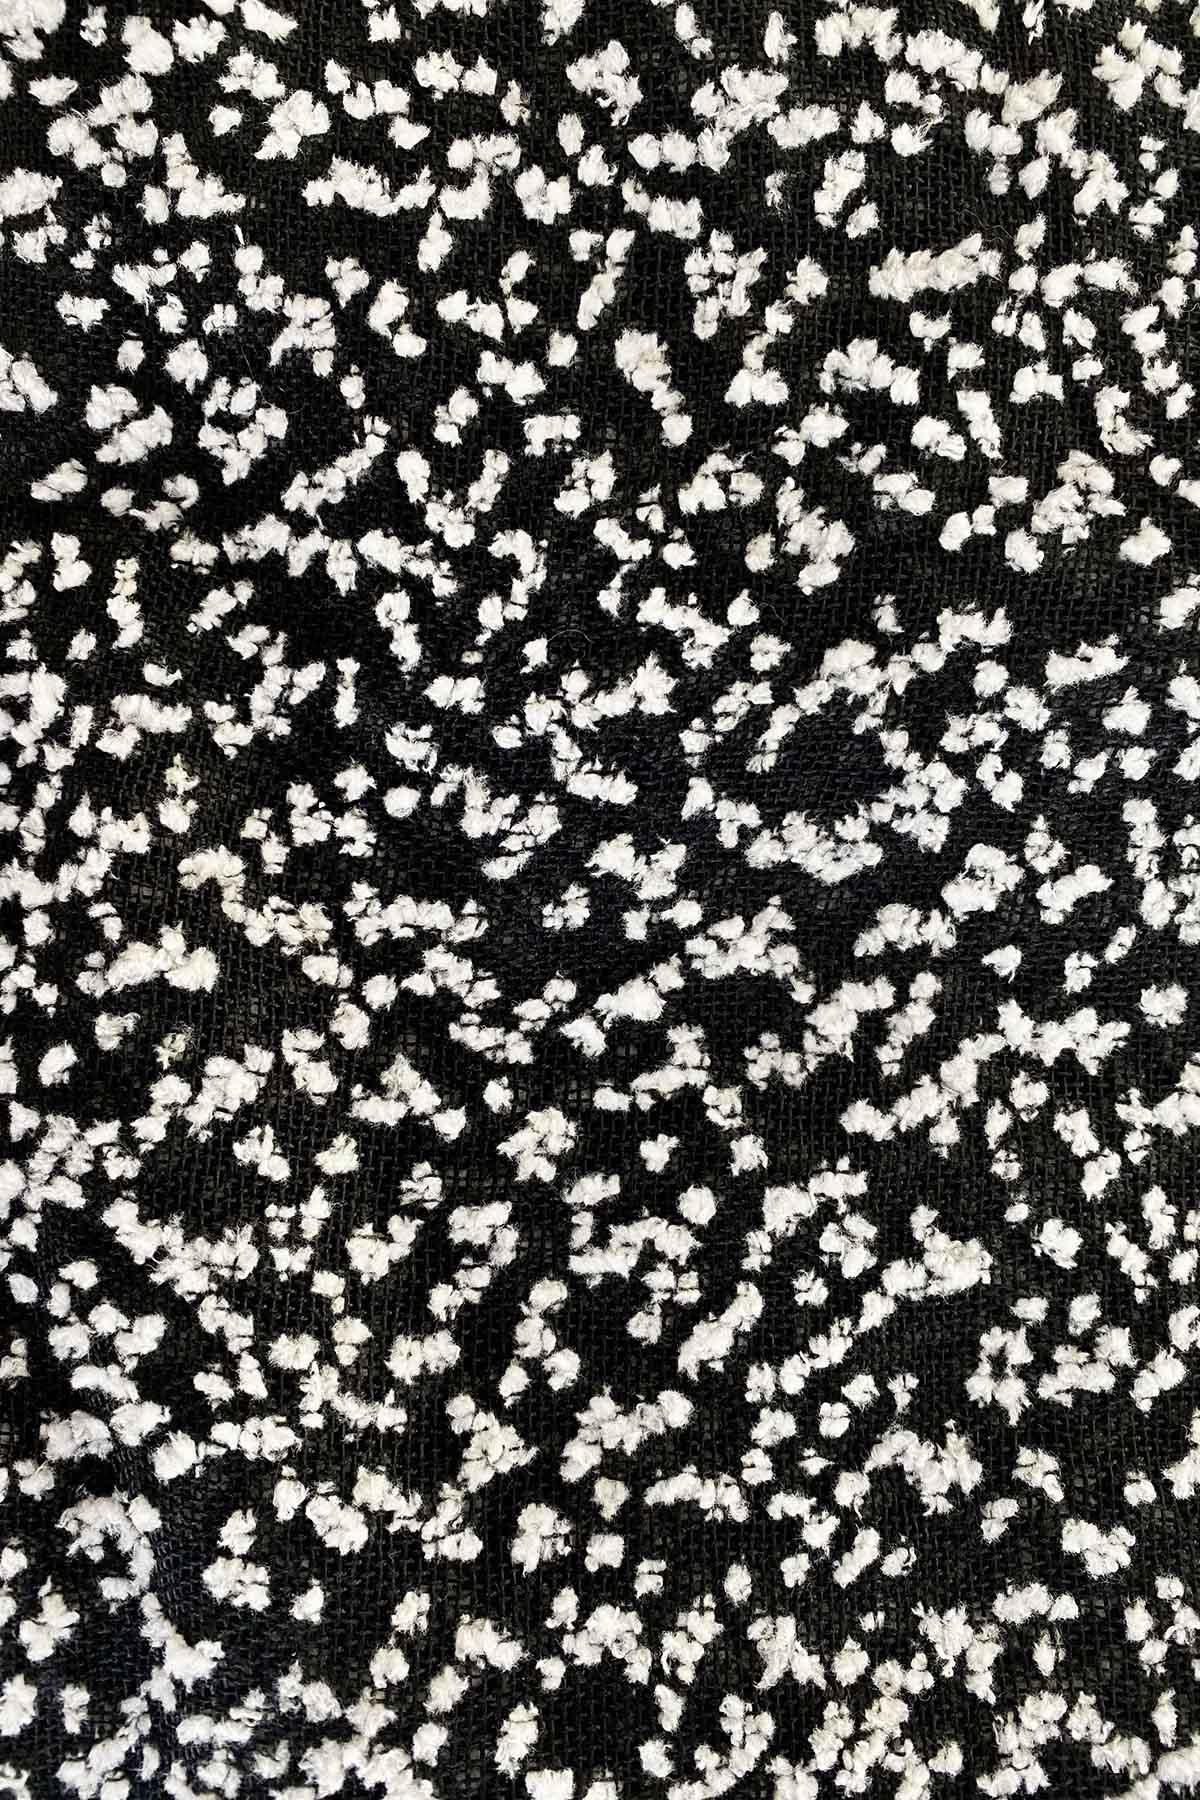 Dettaglio fantasia nera con pallini bianchi Scialle Giuliana realizzata a telaio manuale calabrese brand malia lab accessori artigianali sostenibili